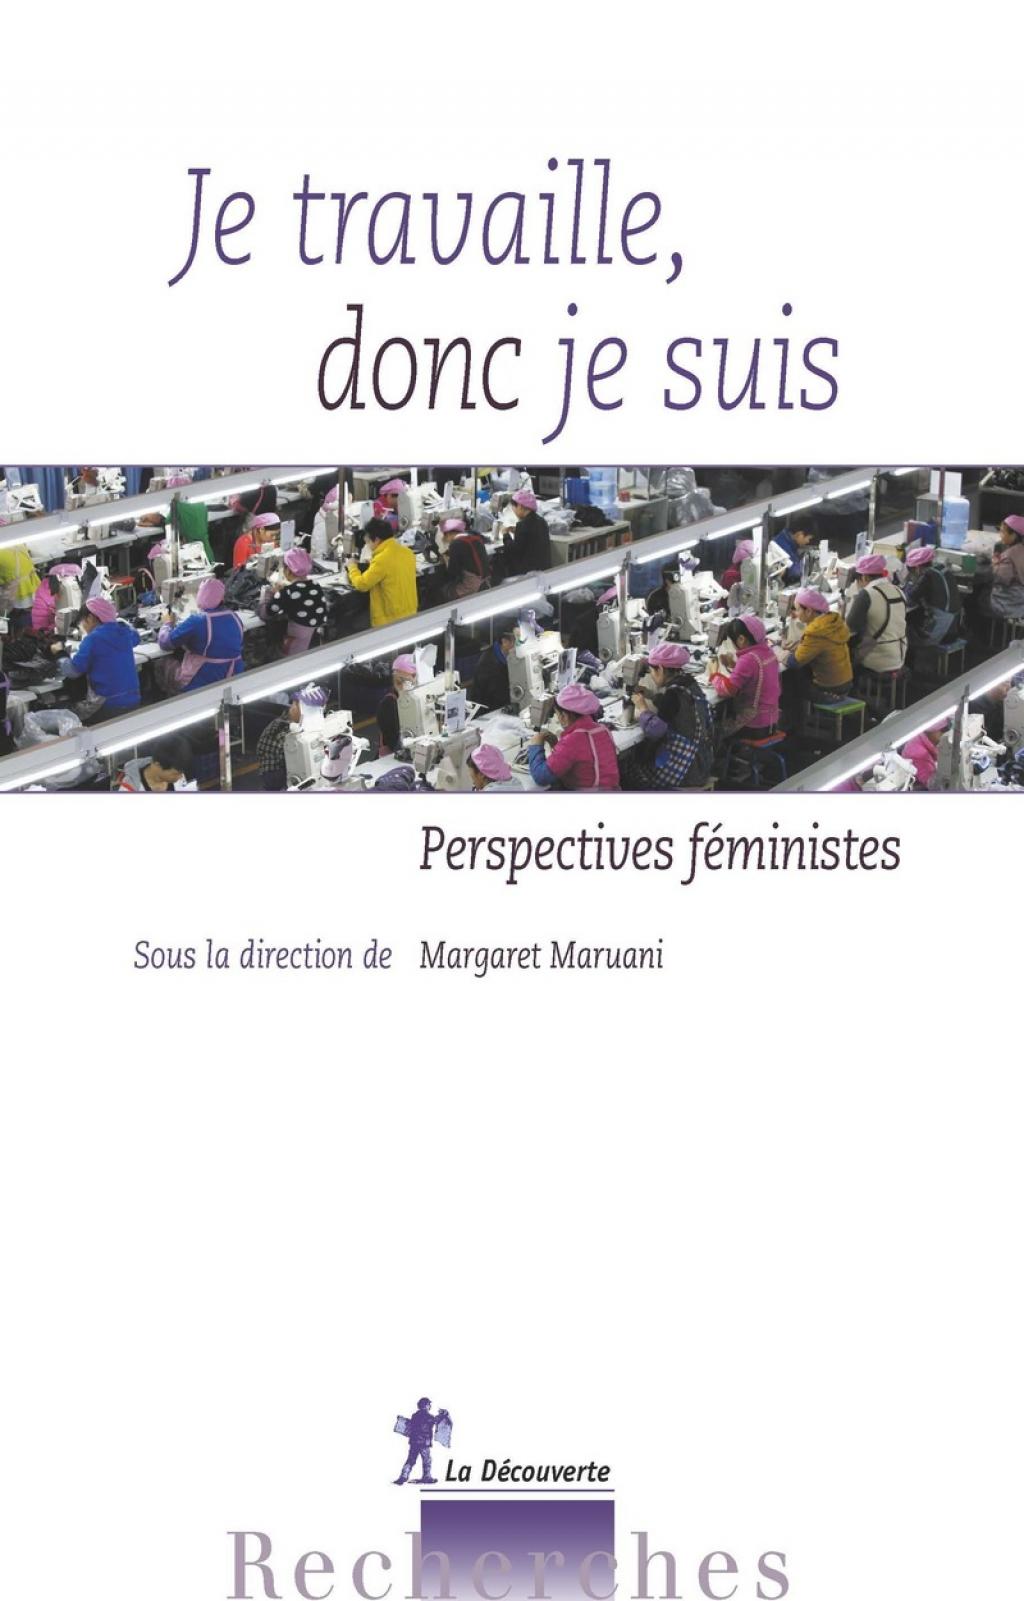 Couverture du livre "Je travaille, donc je suis : perspectives féministes", sous la direction de Margaret Maruani 